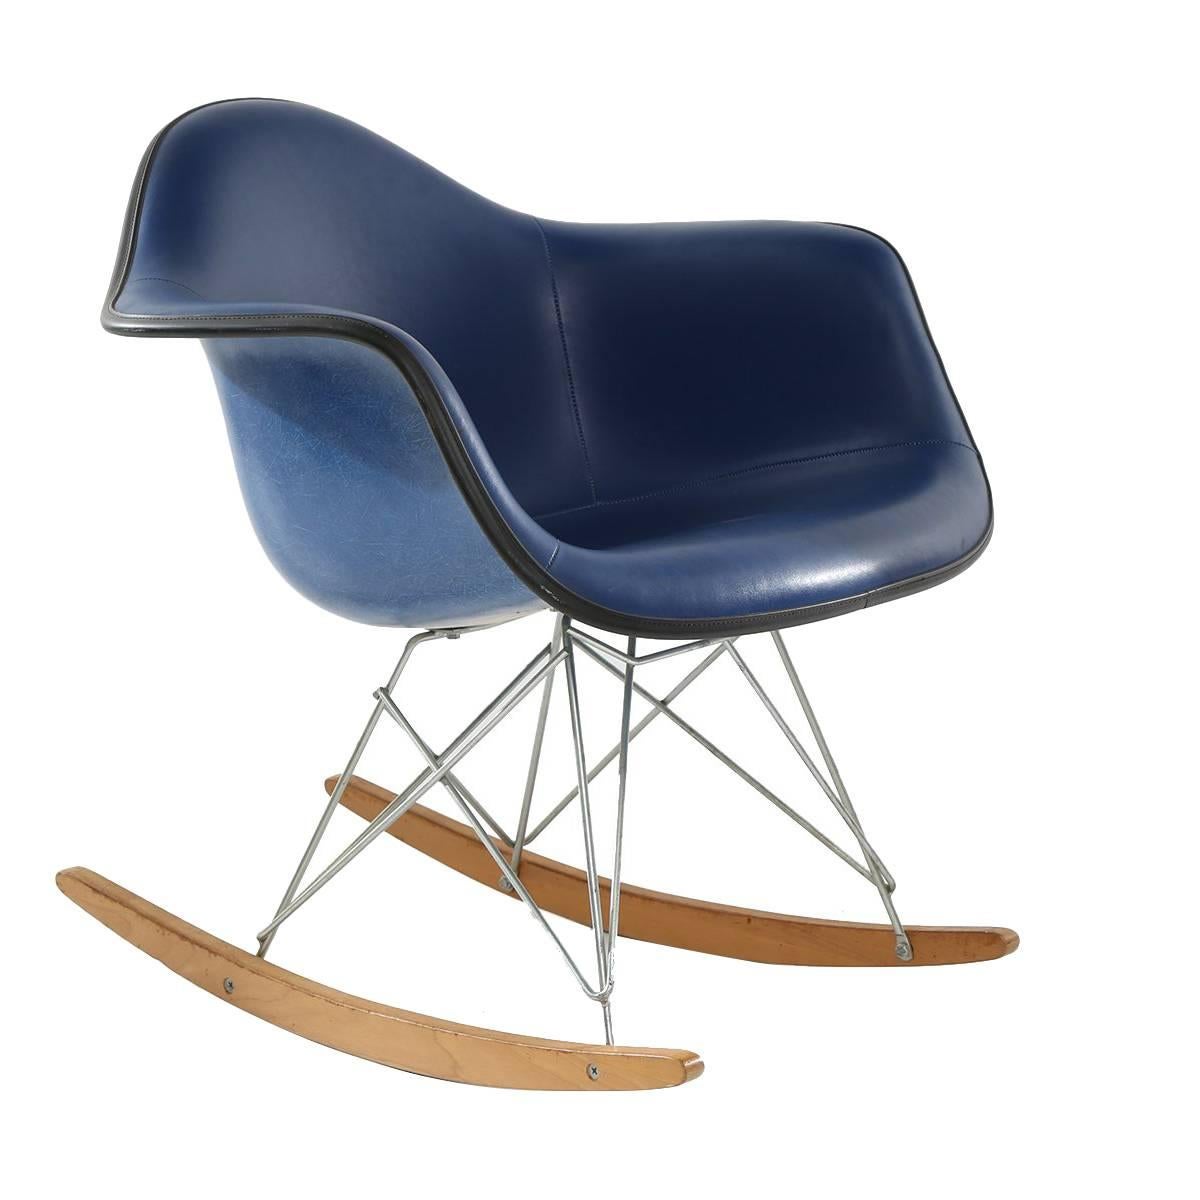 Rare Eames Herman Miller Employee Rocking Chair